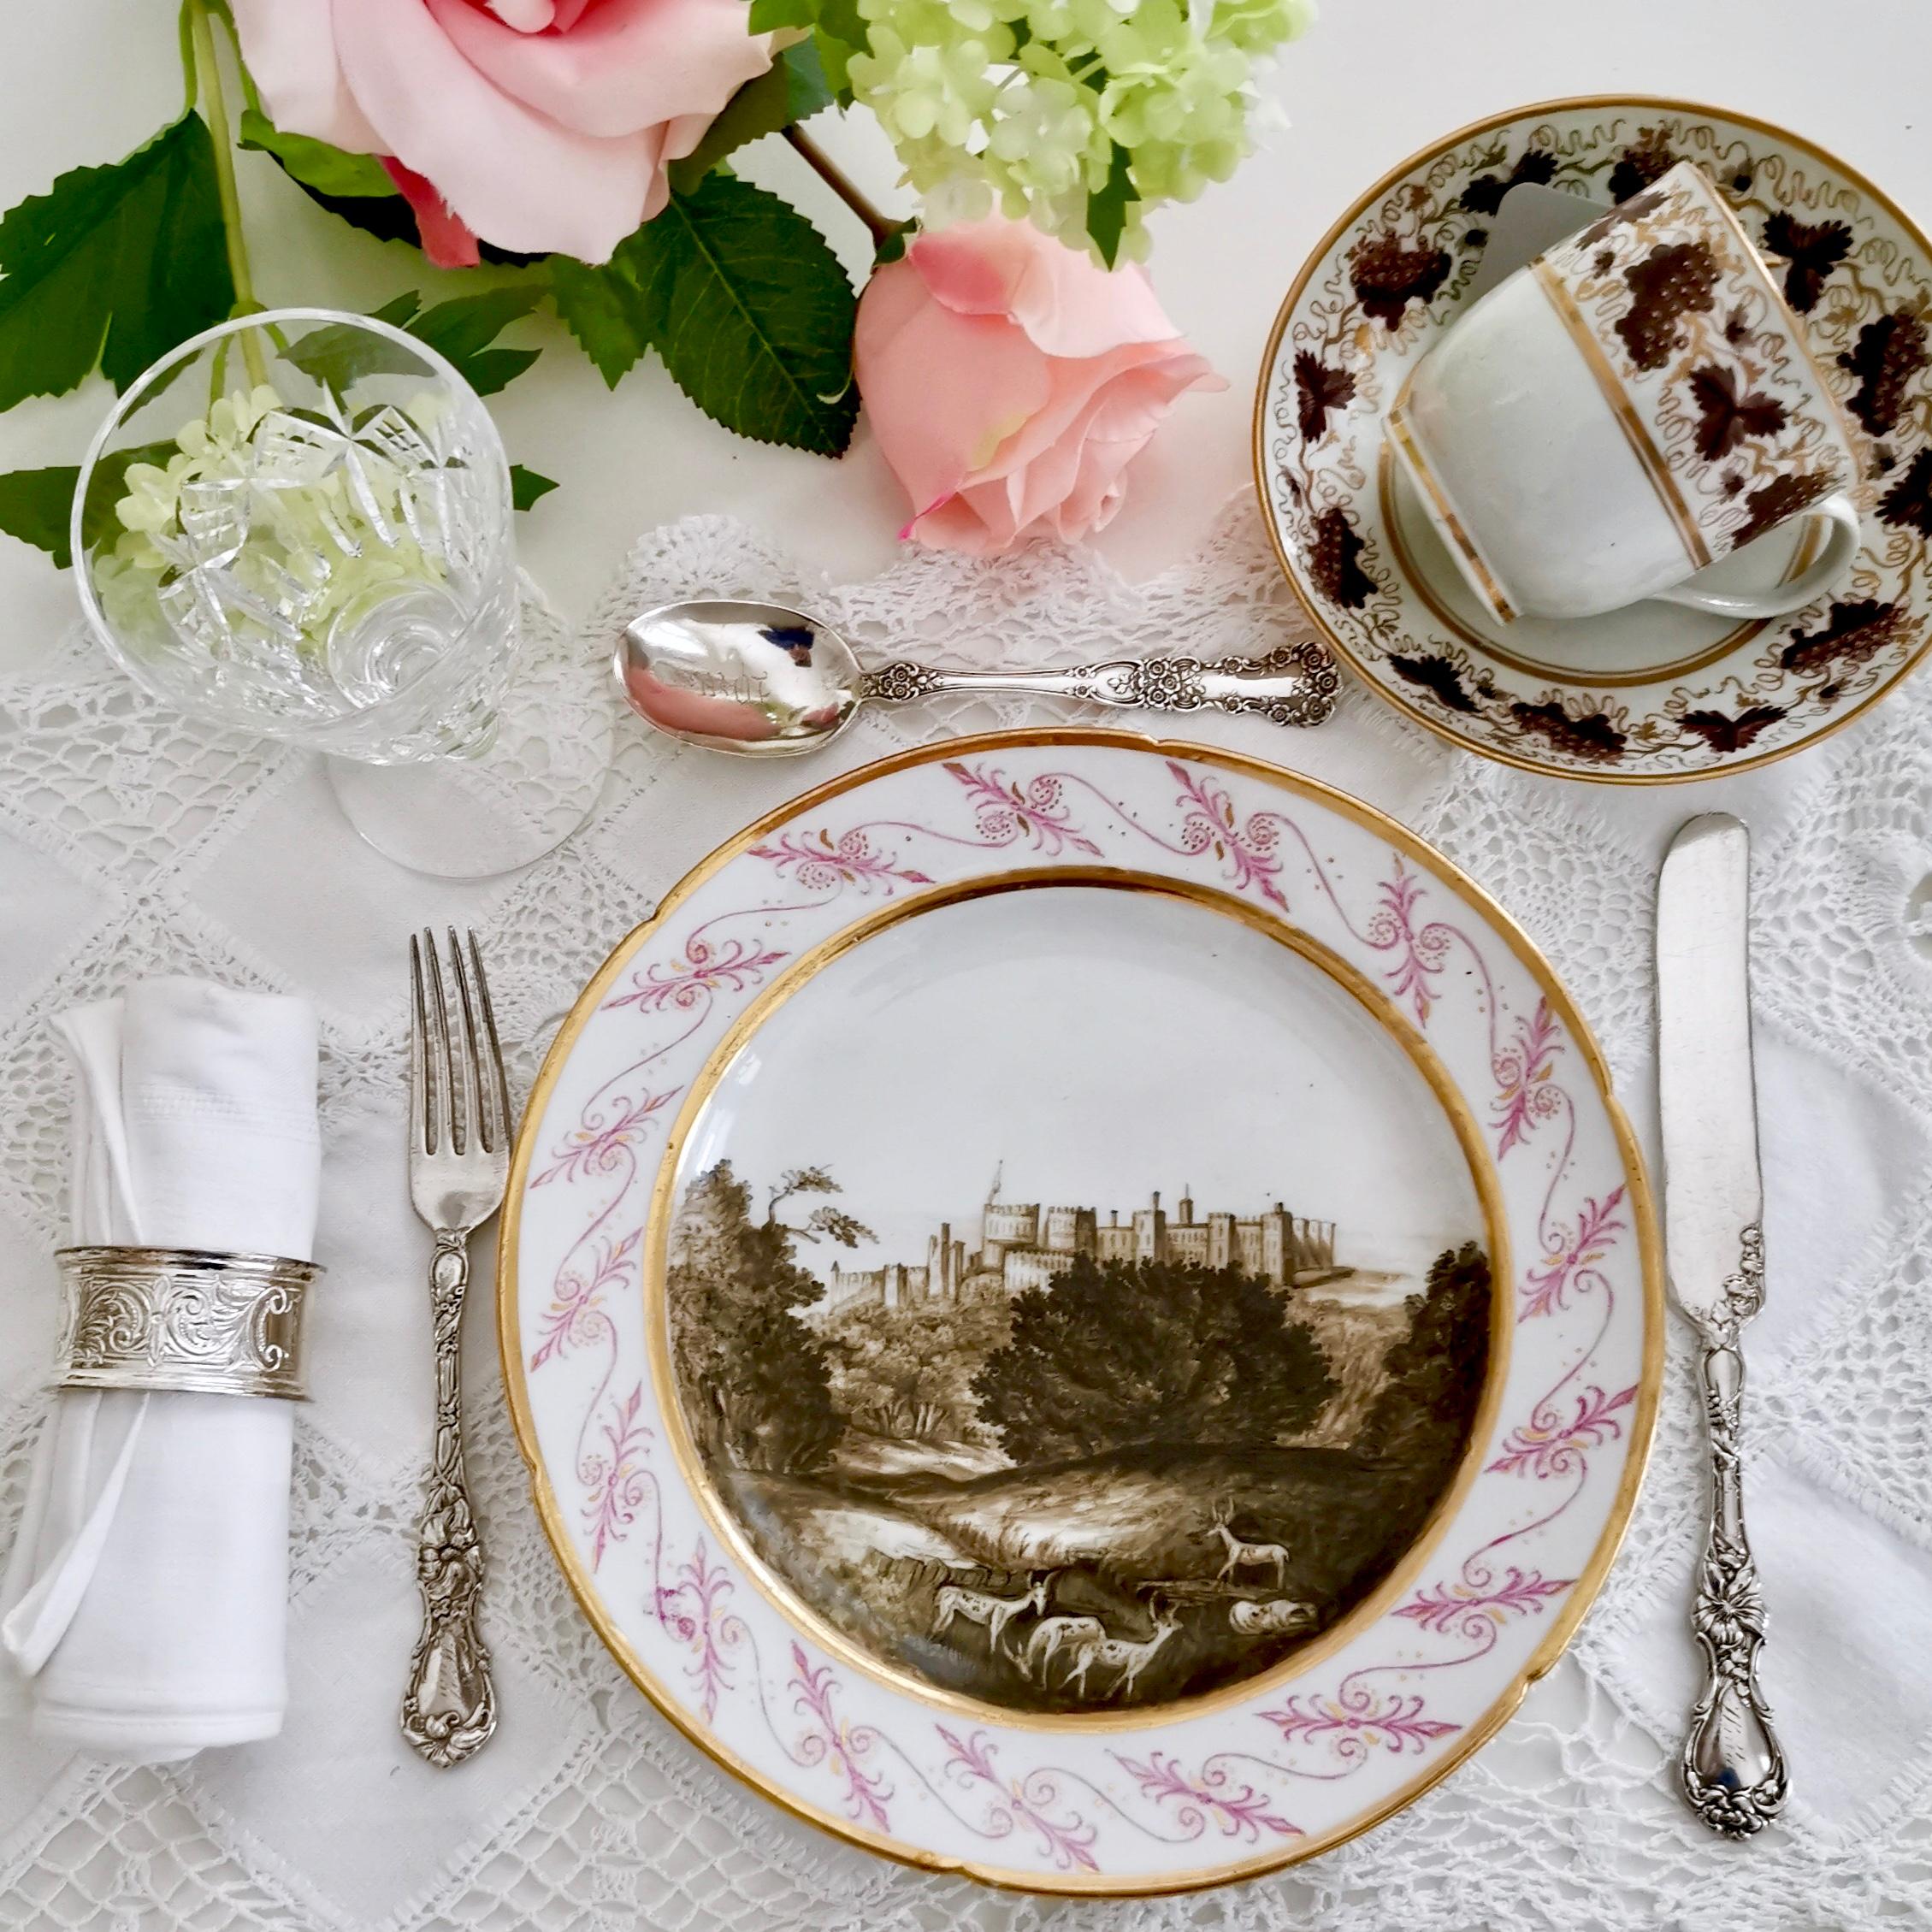 Il s'agit d'une belle et très rare assiette à dessert fabriquée par Coalport vers 1805, c'est-à-dire à la fin de l'ère géorgienne. L'assiette est décorée d'un paysage nommé du château de Windsor superbement peint en sépia par le célèbre peintre sur